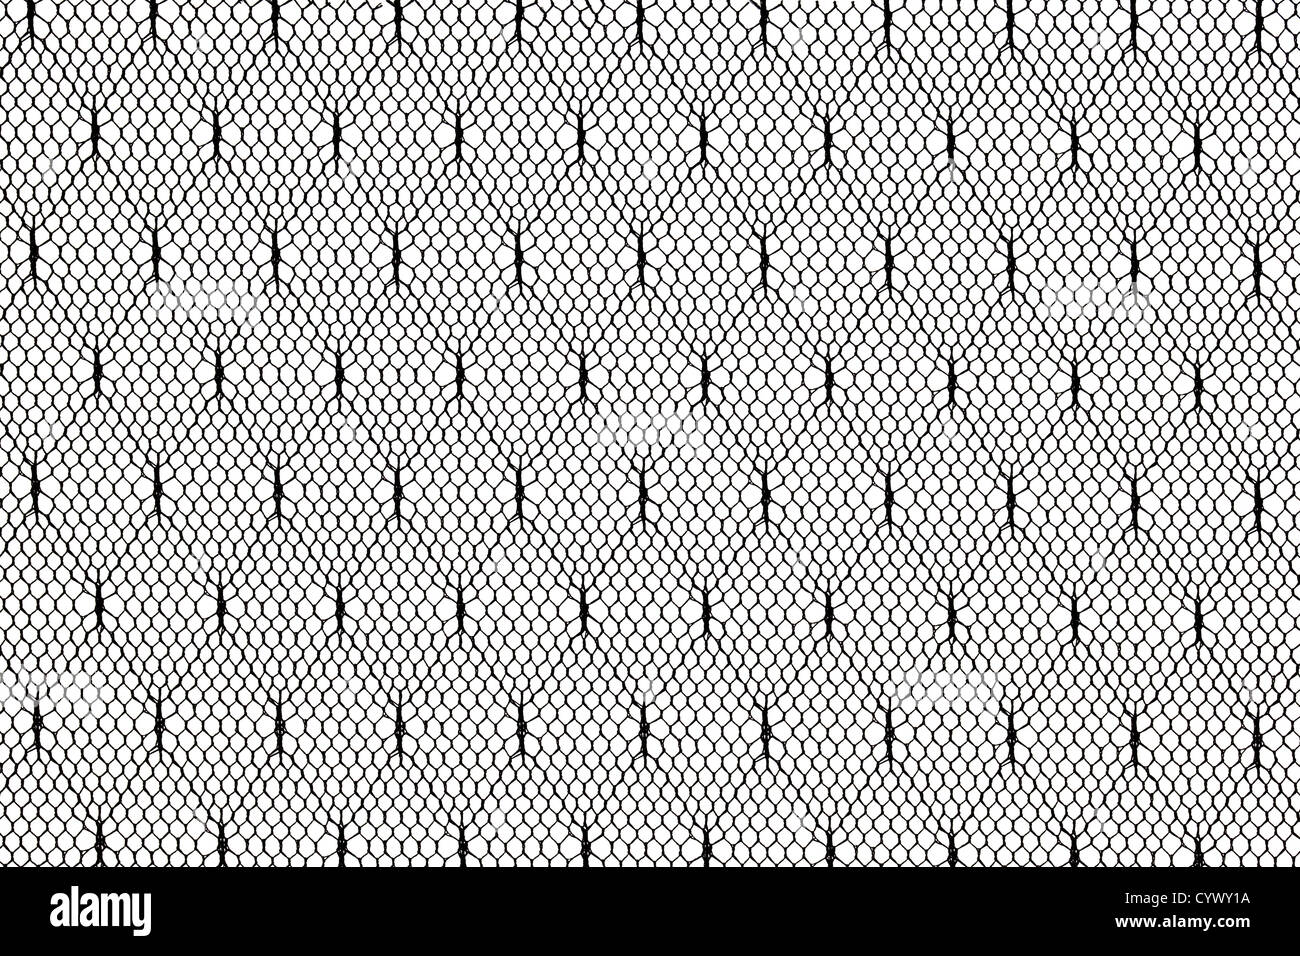 Type de tissu en dentelle noir against white background Banque D'Images